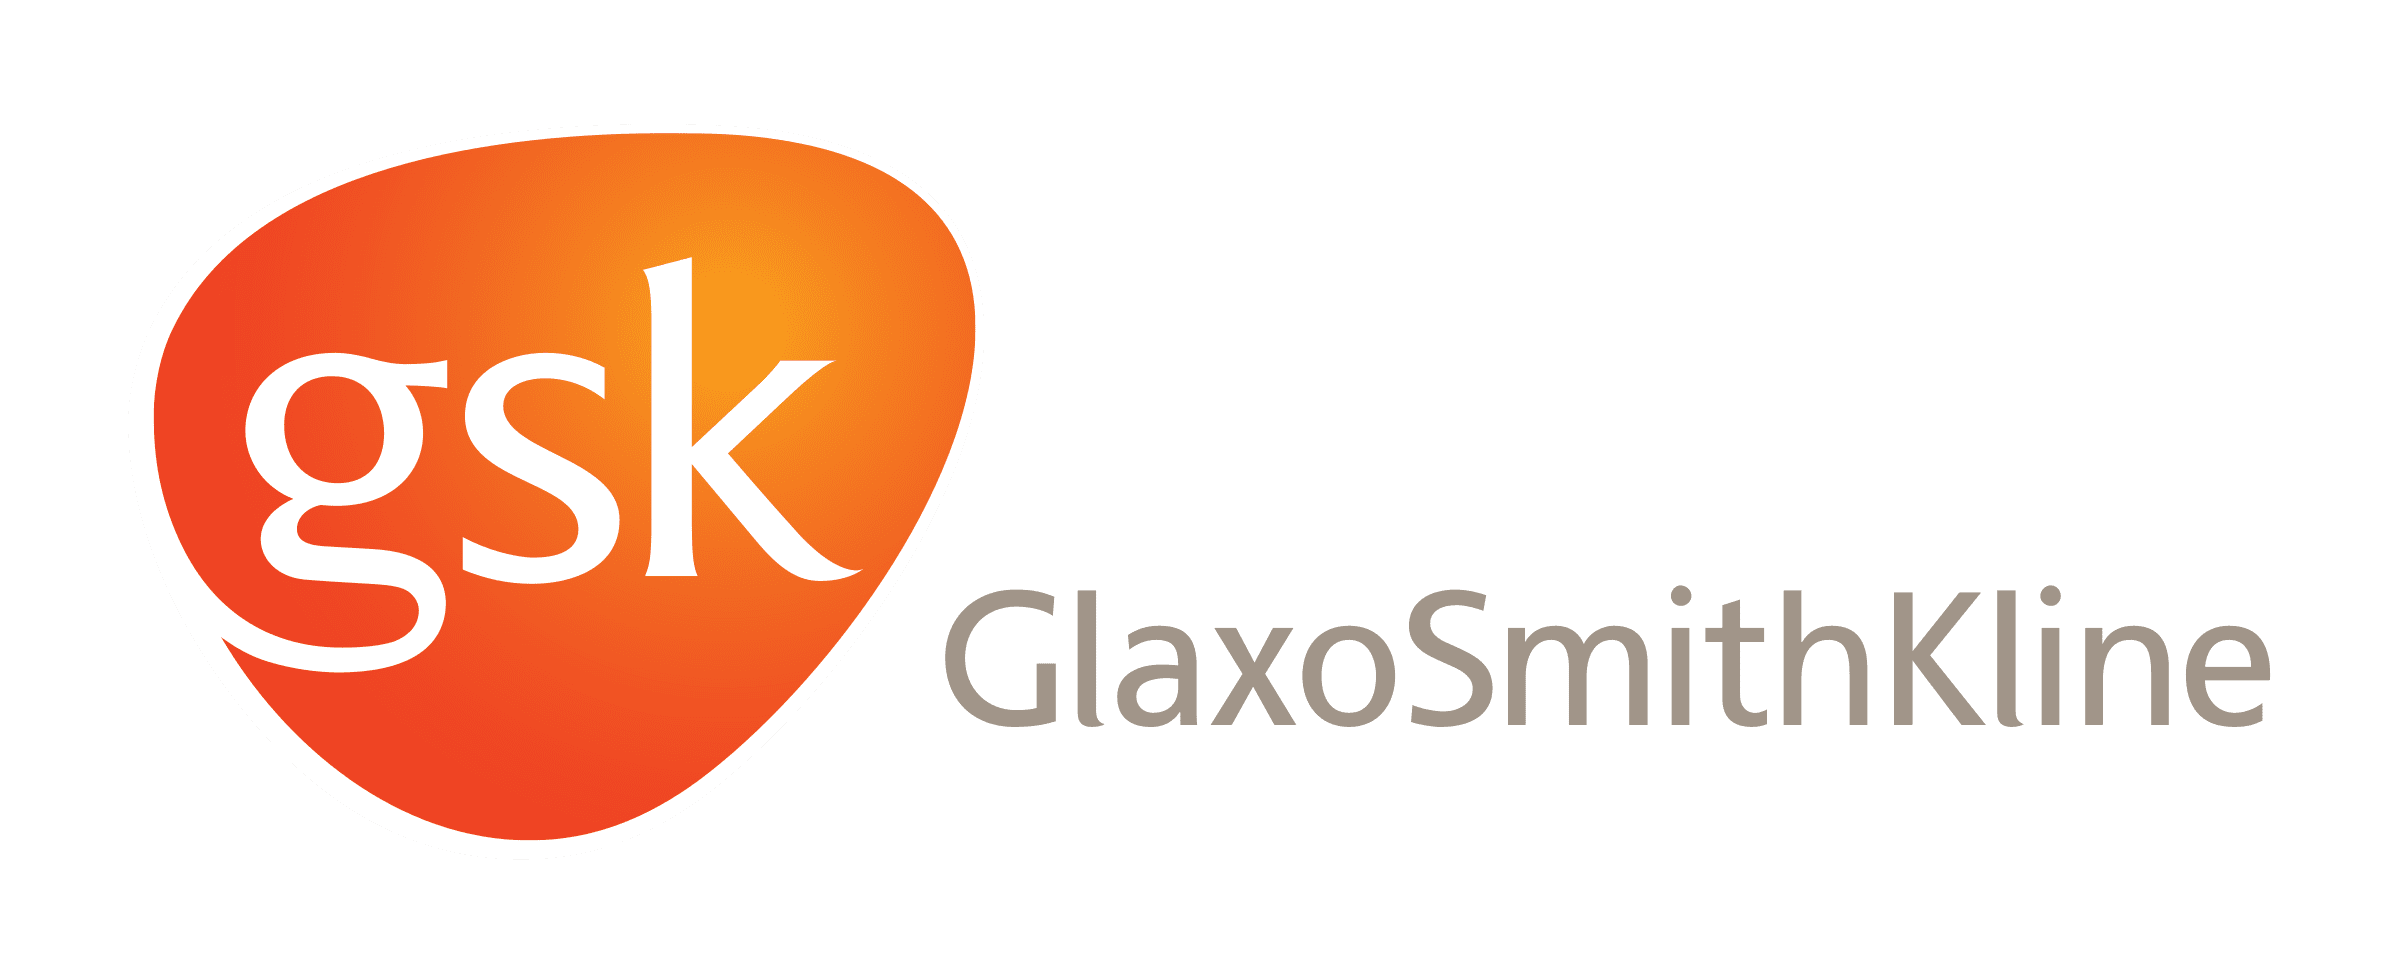 glaxosmithkline-logo-png-transparent